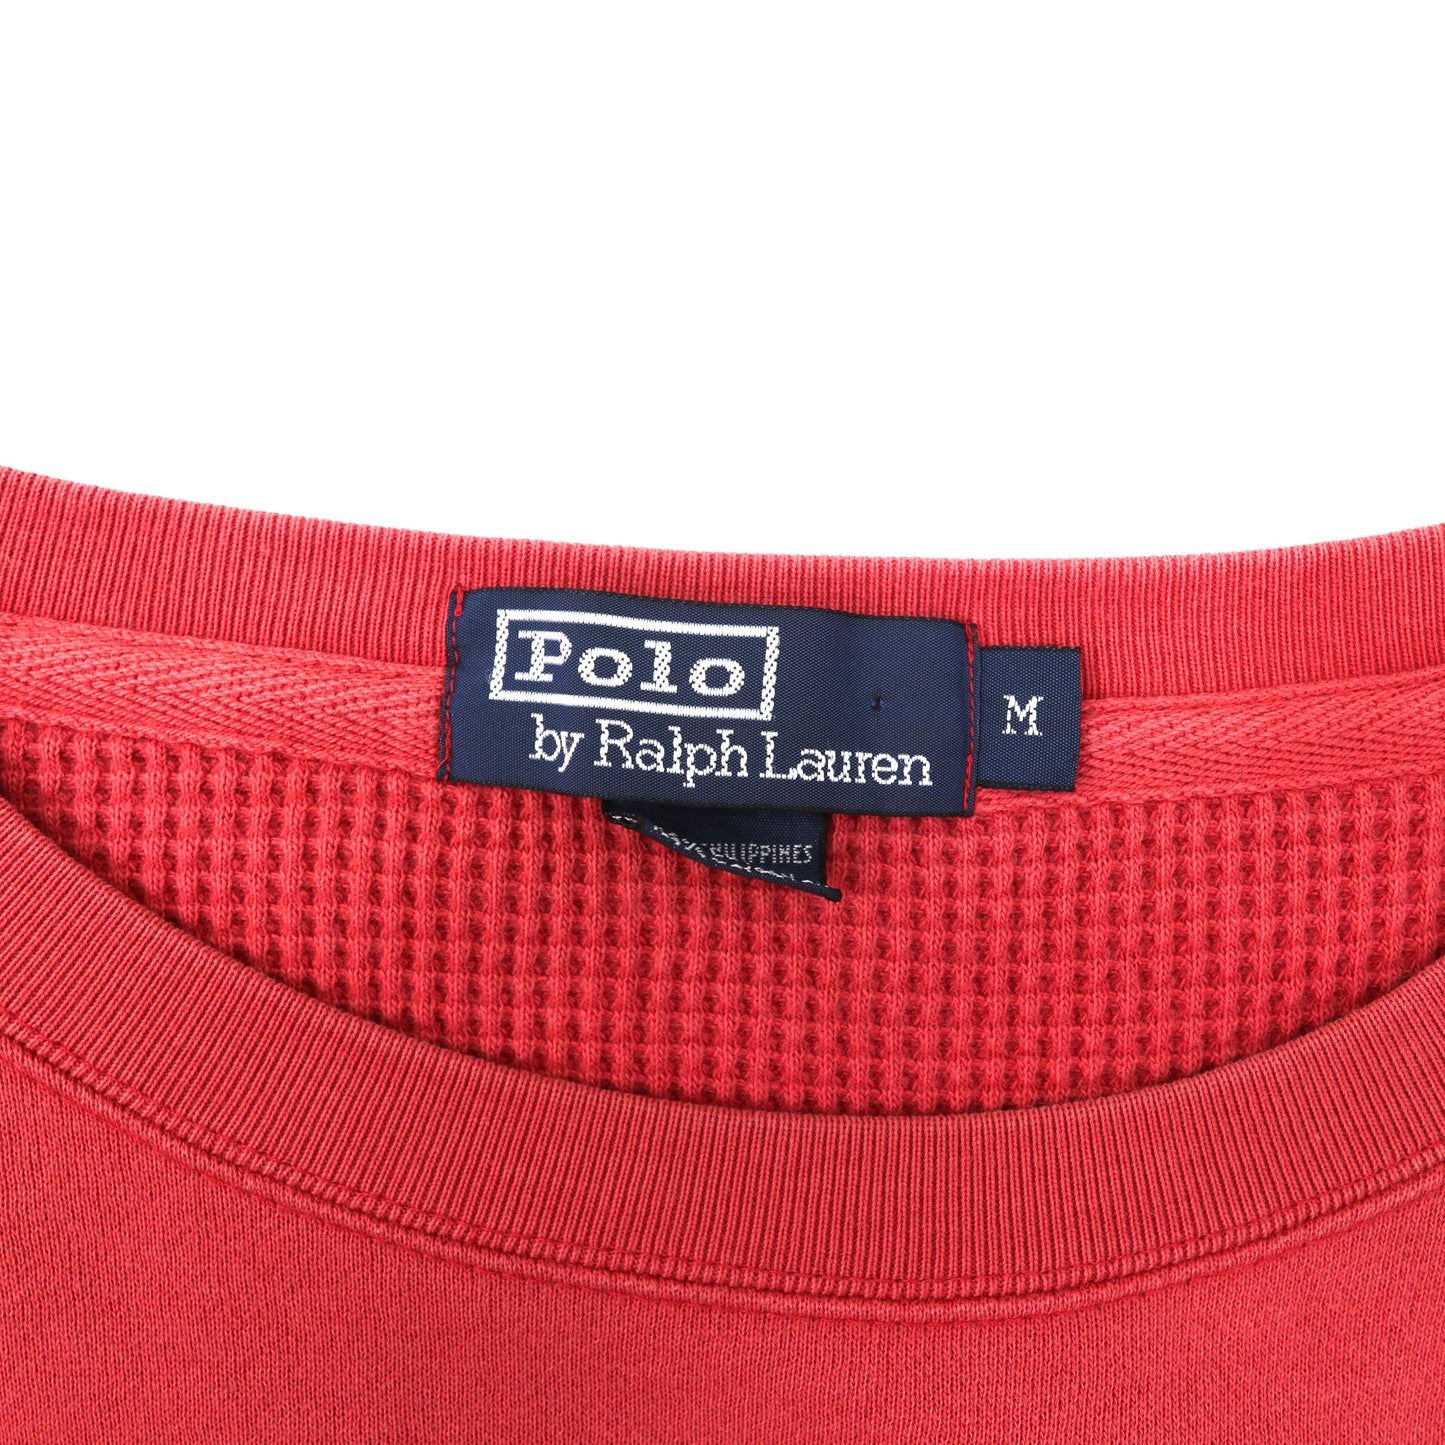 Polo by Ralph Lauren クルーネックスウェット M ピンク コットン ビッグサイズ スモールポニー刺繍